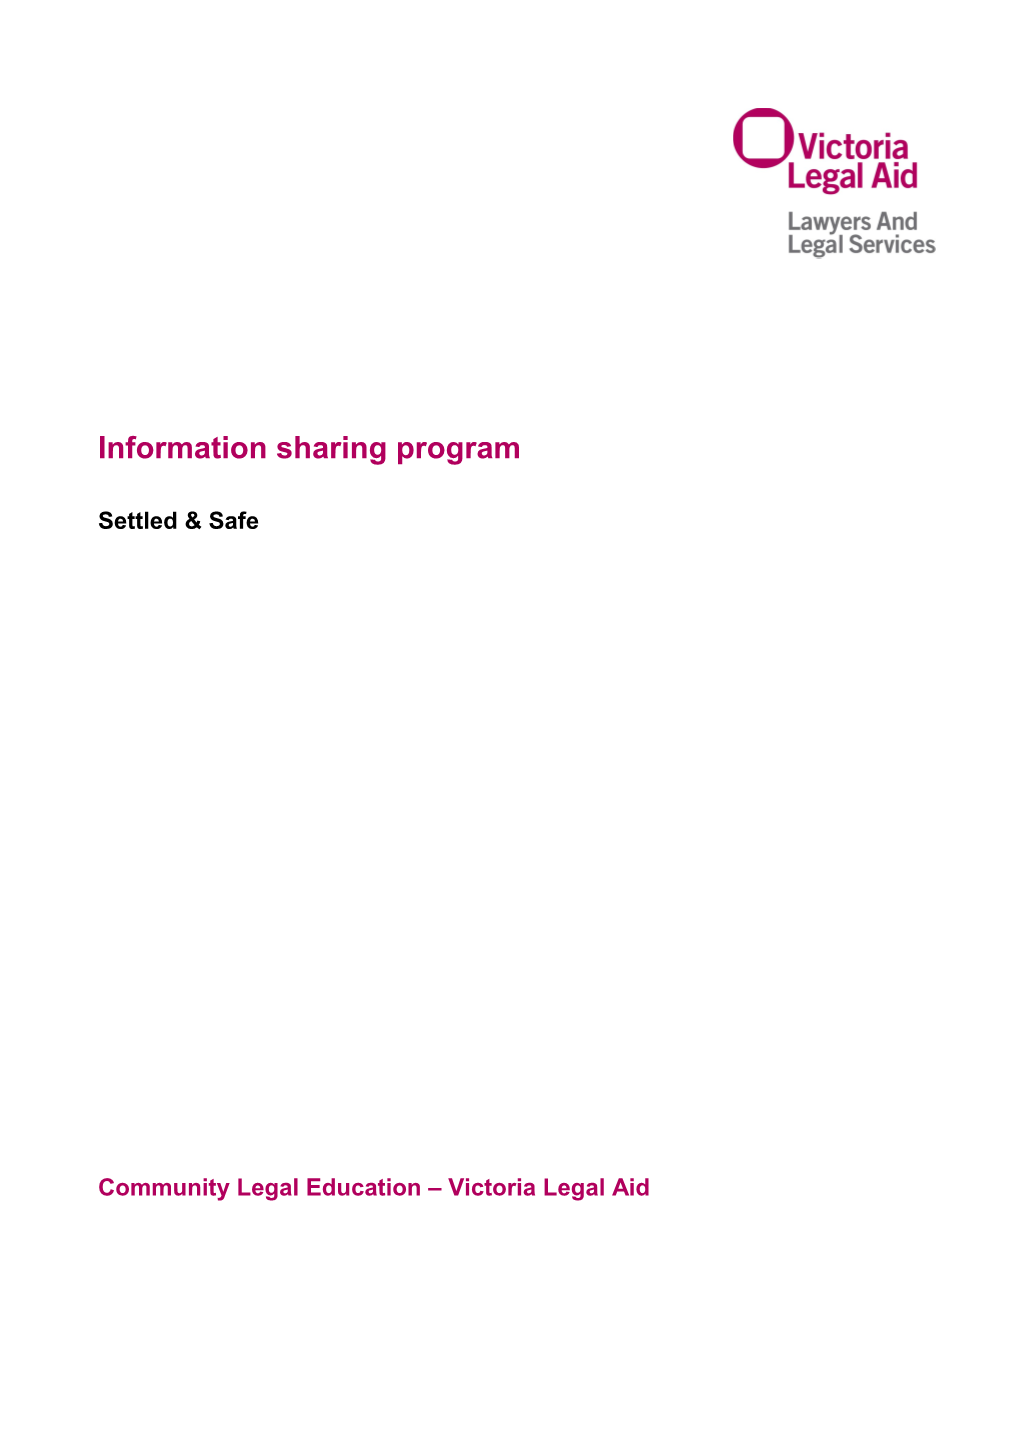 Settled & Safe Information Sharing Program